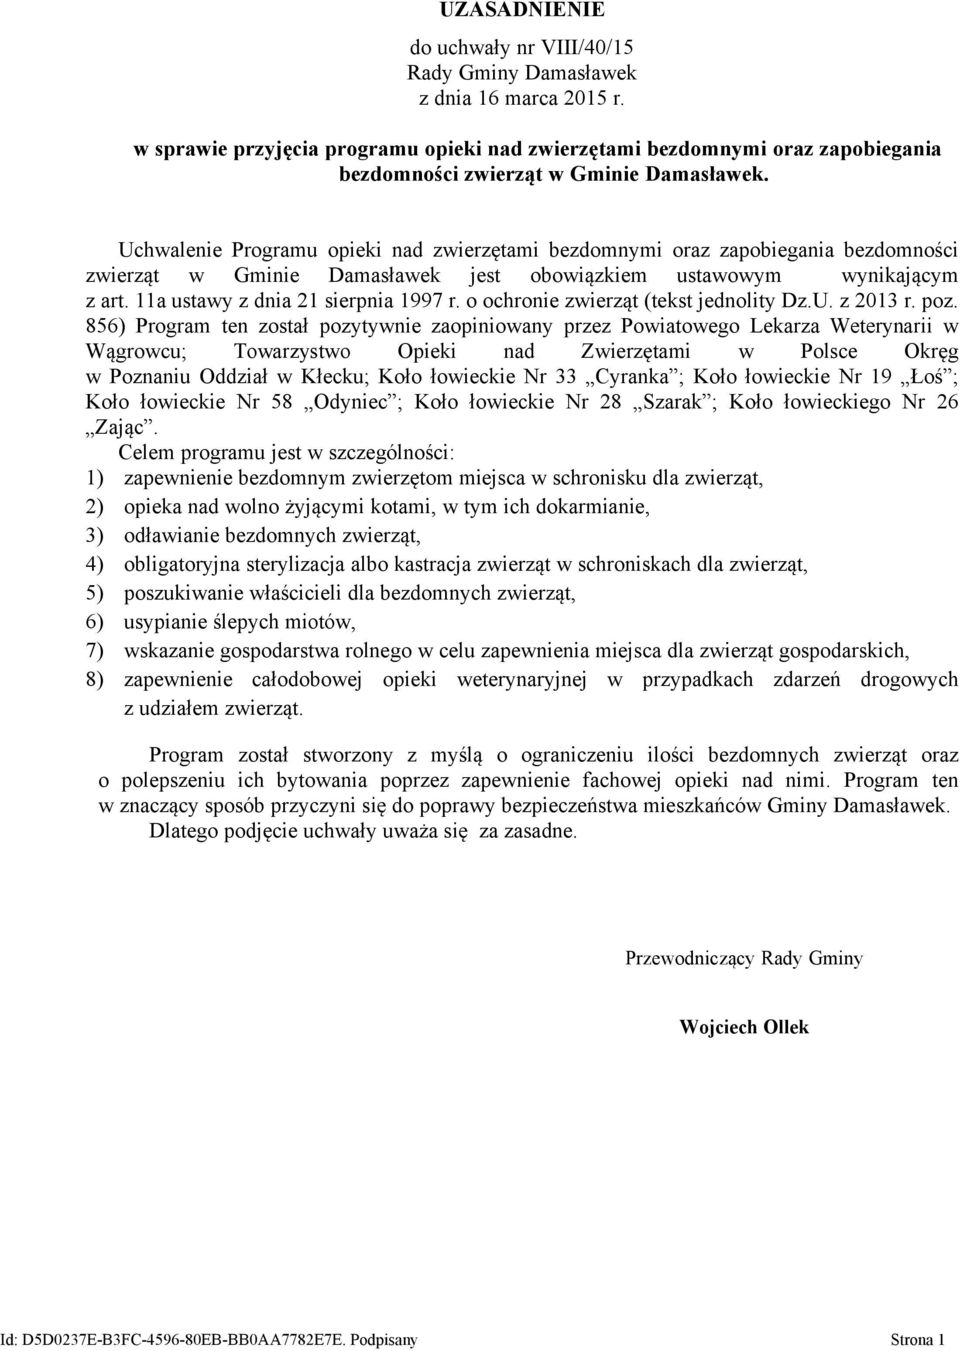 Uchwalenie Programu opieki nad zwierzętami bezdomnymi oraz zapobiegania bezdomności zwierząt w Gminie Damasławek jest obowiązkiem ustawowym wynikającym z art. 11a ustawy z dnia 21 sierpnia 1997 r.